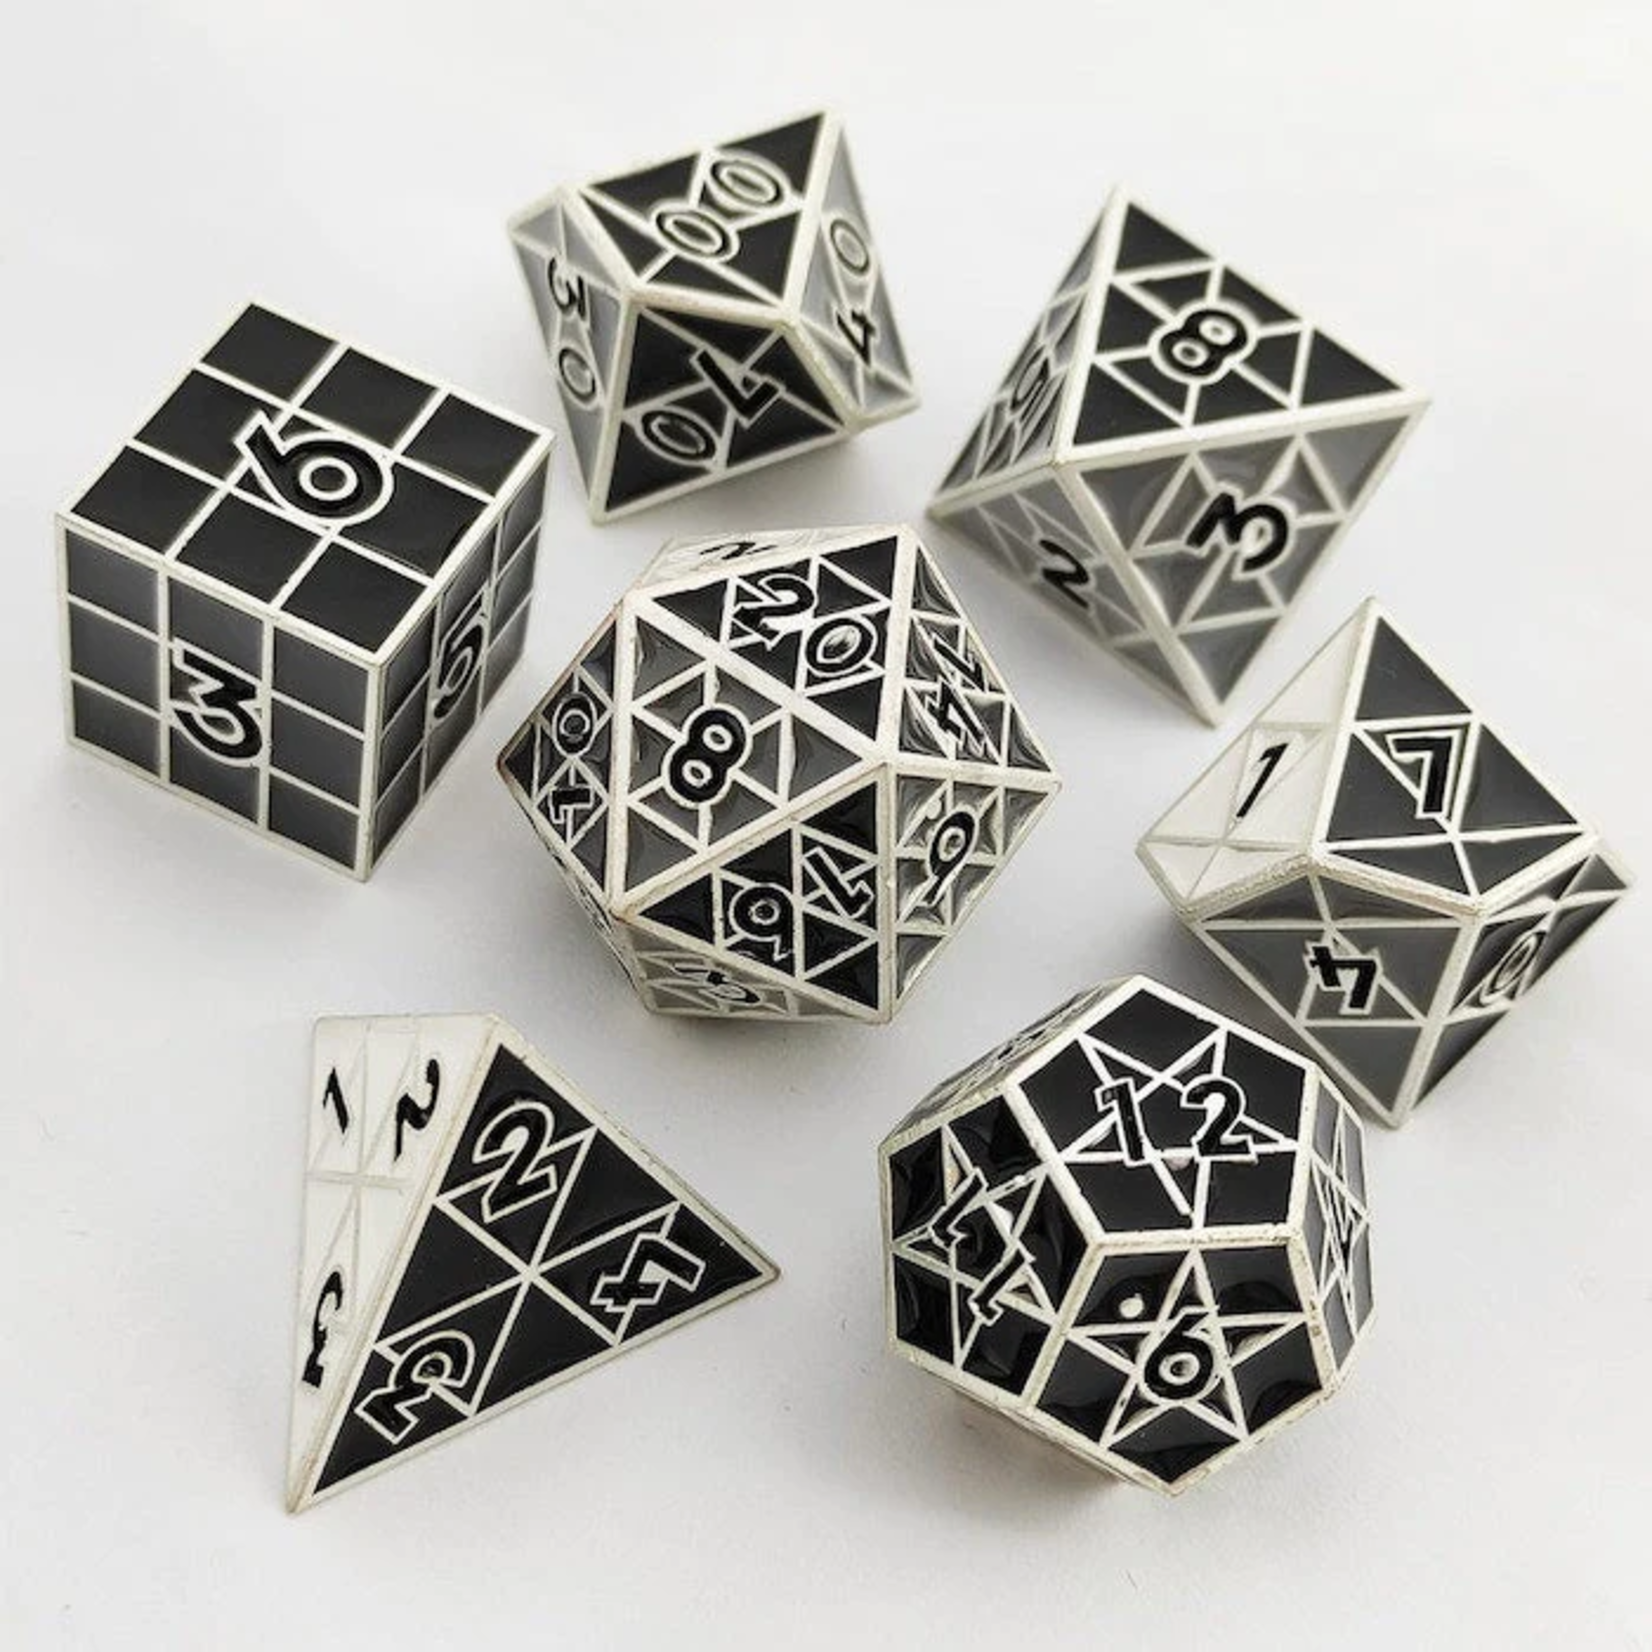 Foam Brain Games Puzzle Cube Shades of Gray Metal RPG dice 8 die set